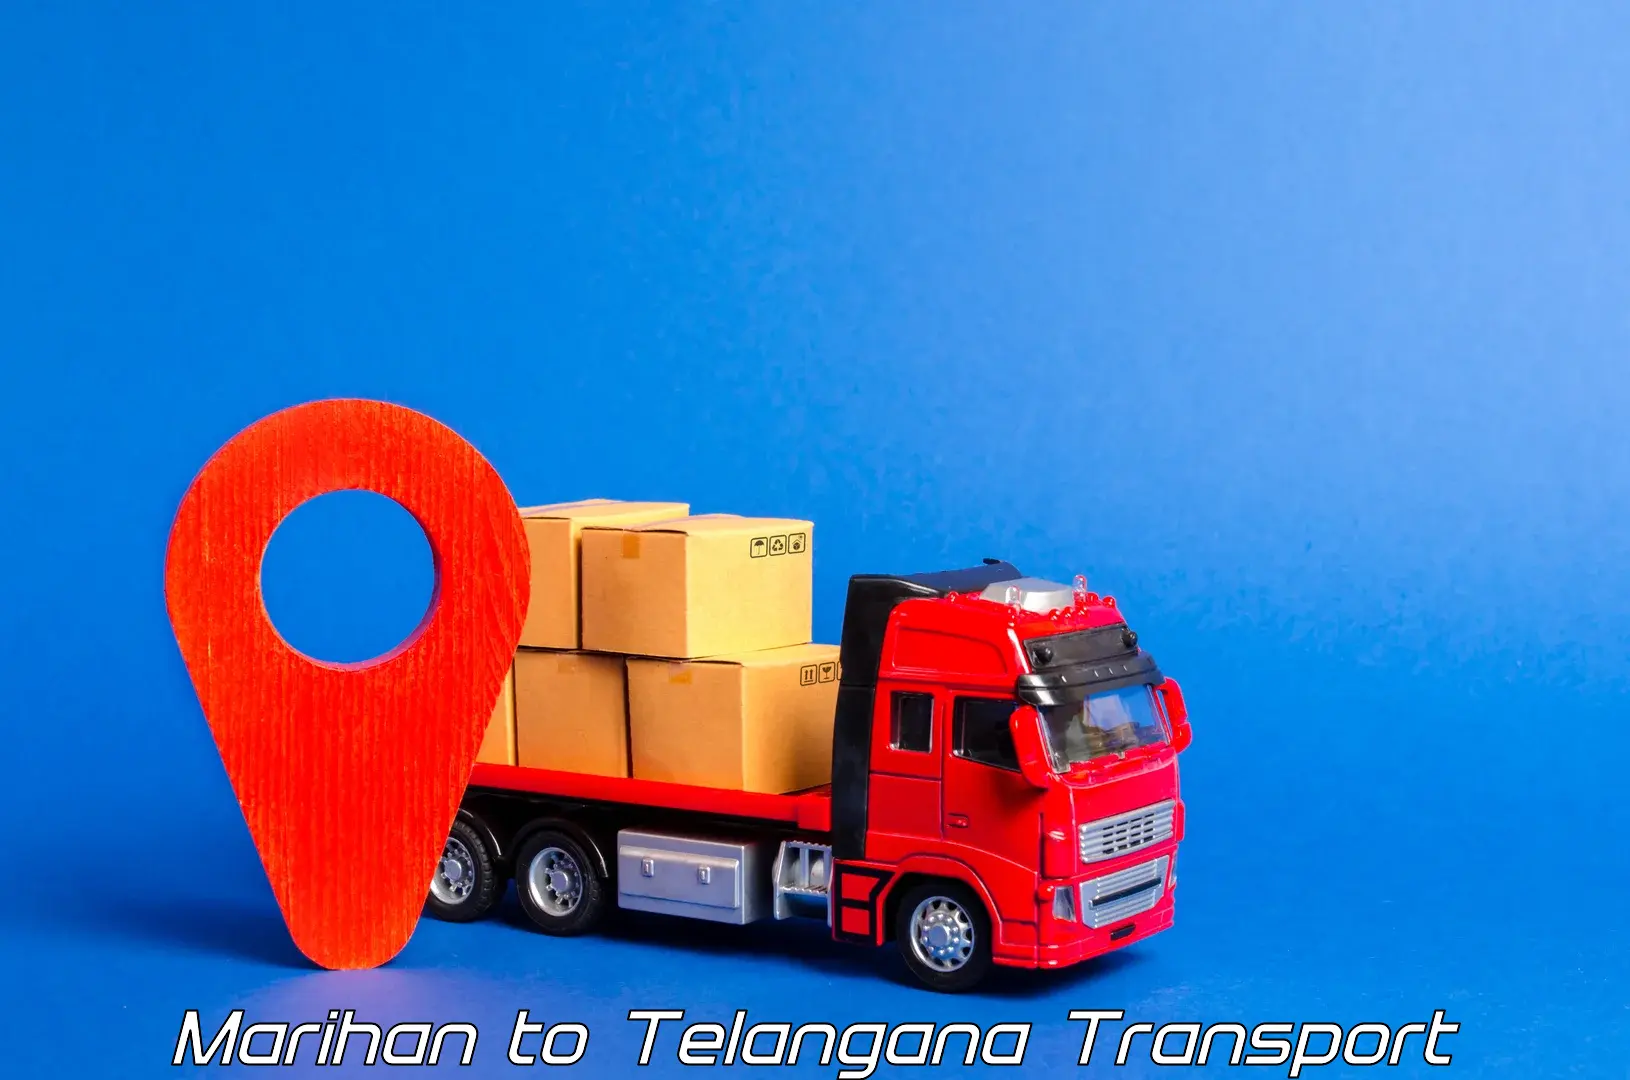 Vehicle transport services Marihan to Balanagar